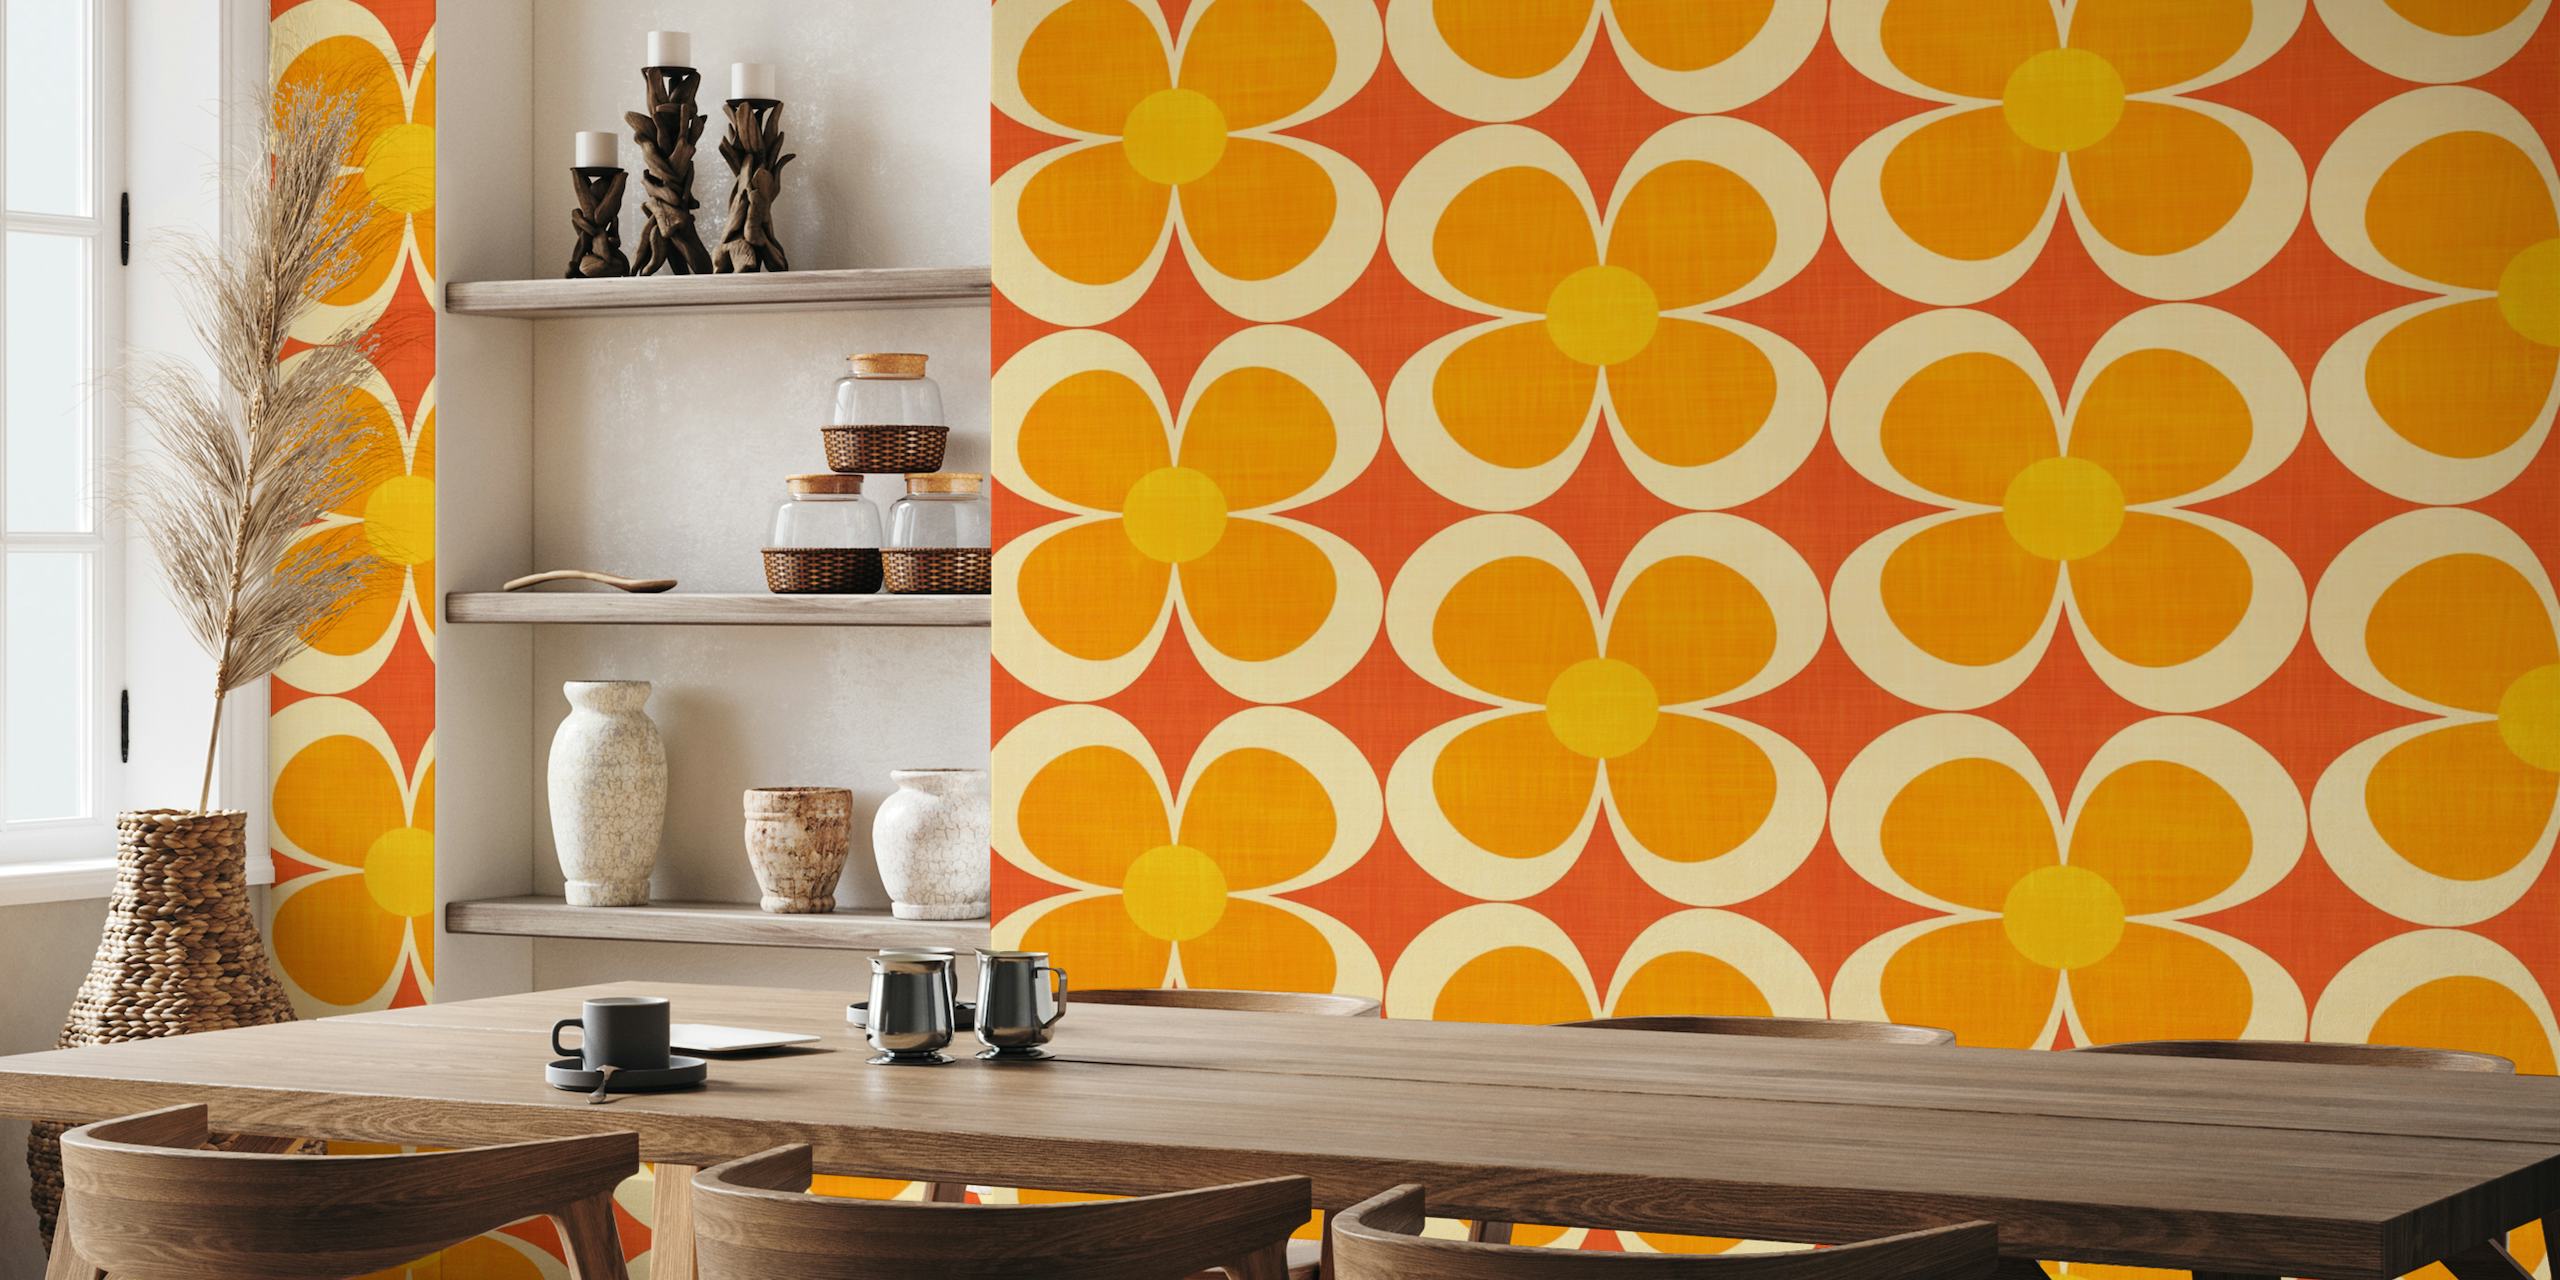 Fototapeta Groovy Geometric Floral inspirovaná retro vzorem v oranžové, žluté a červené